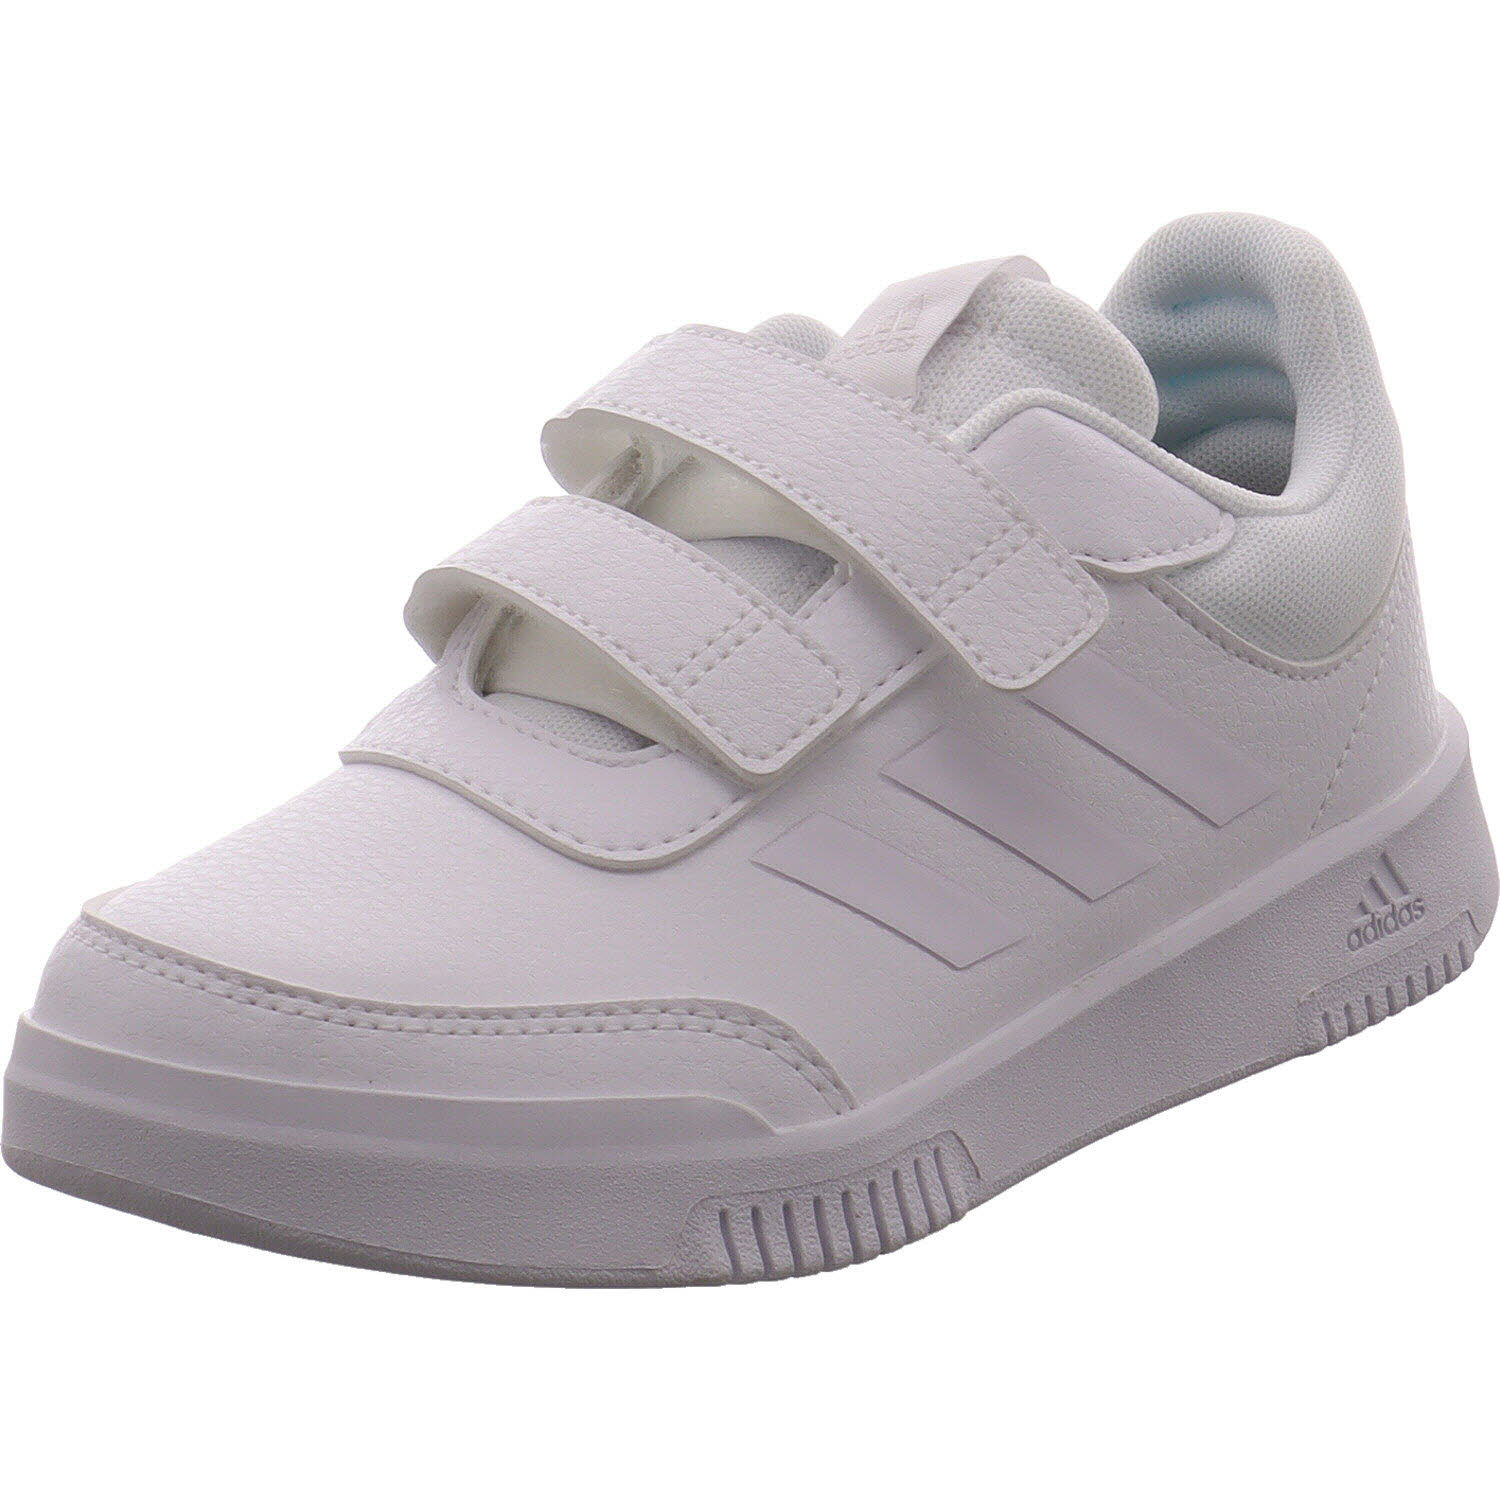 Unisex Sneaker low von Adidas auch in Weiß erhältlich